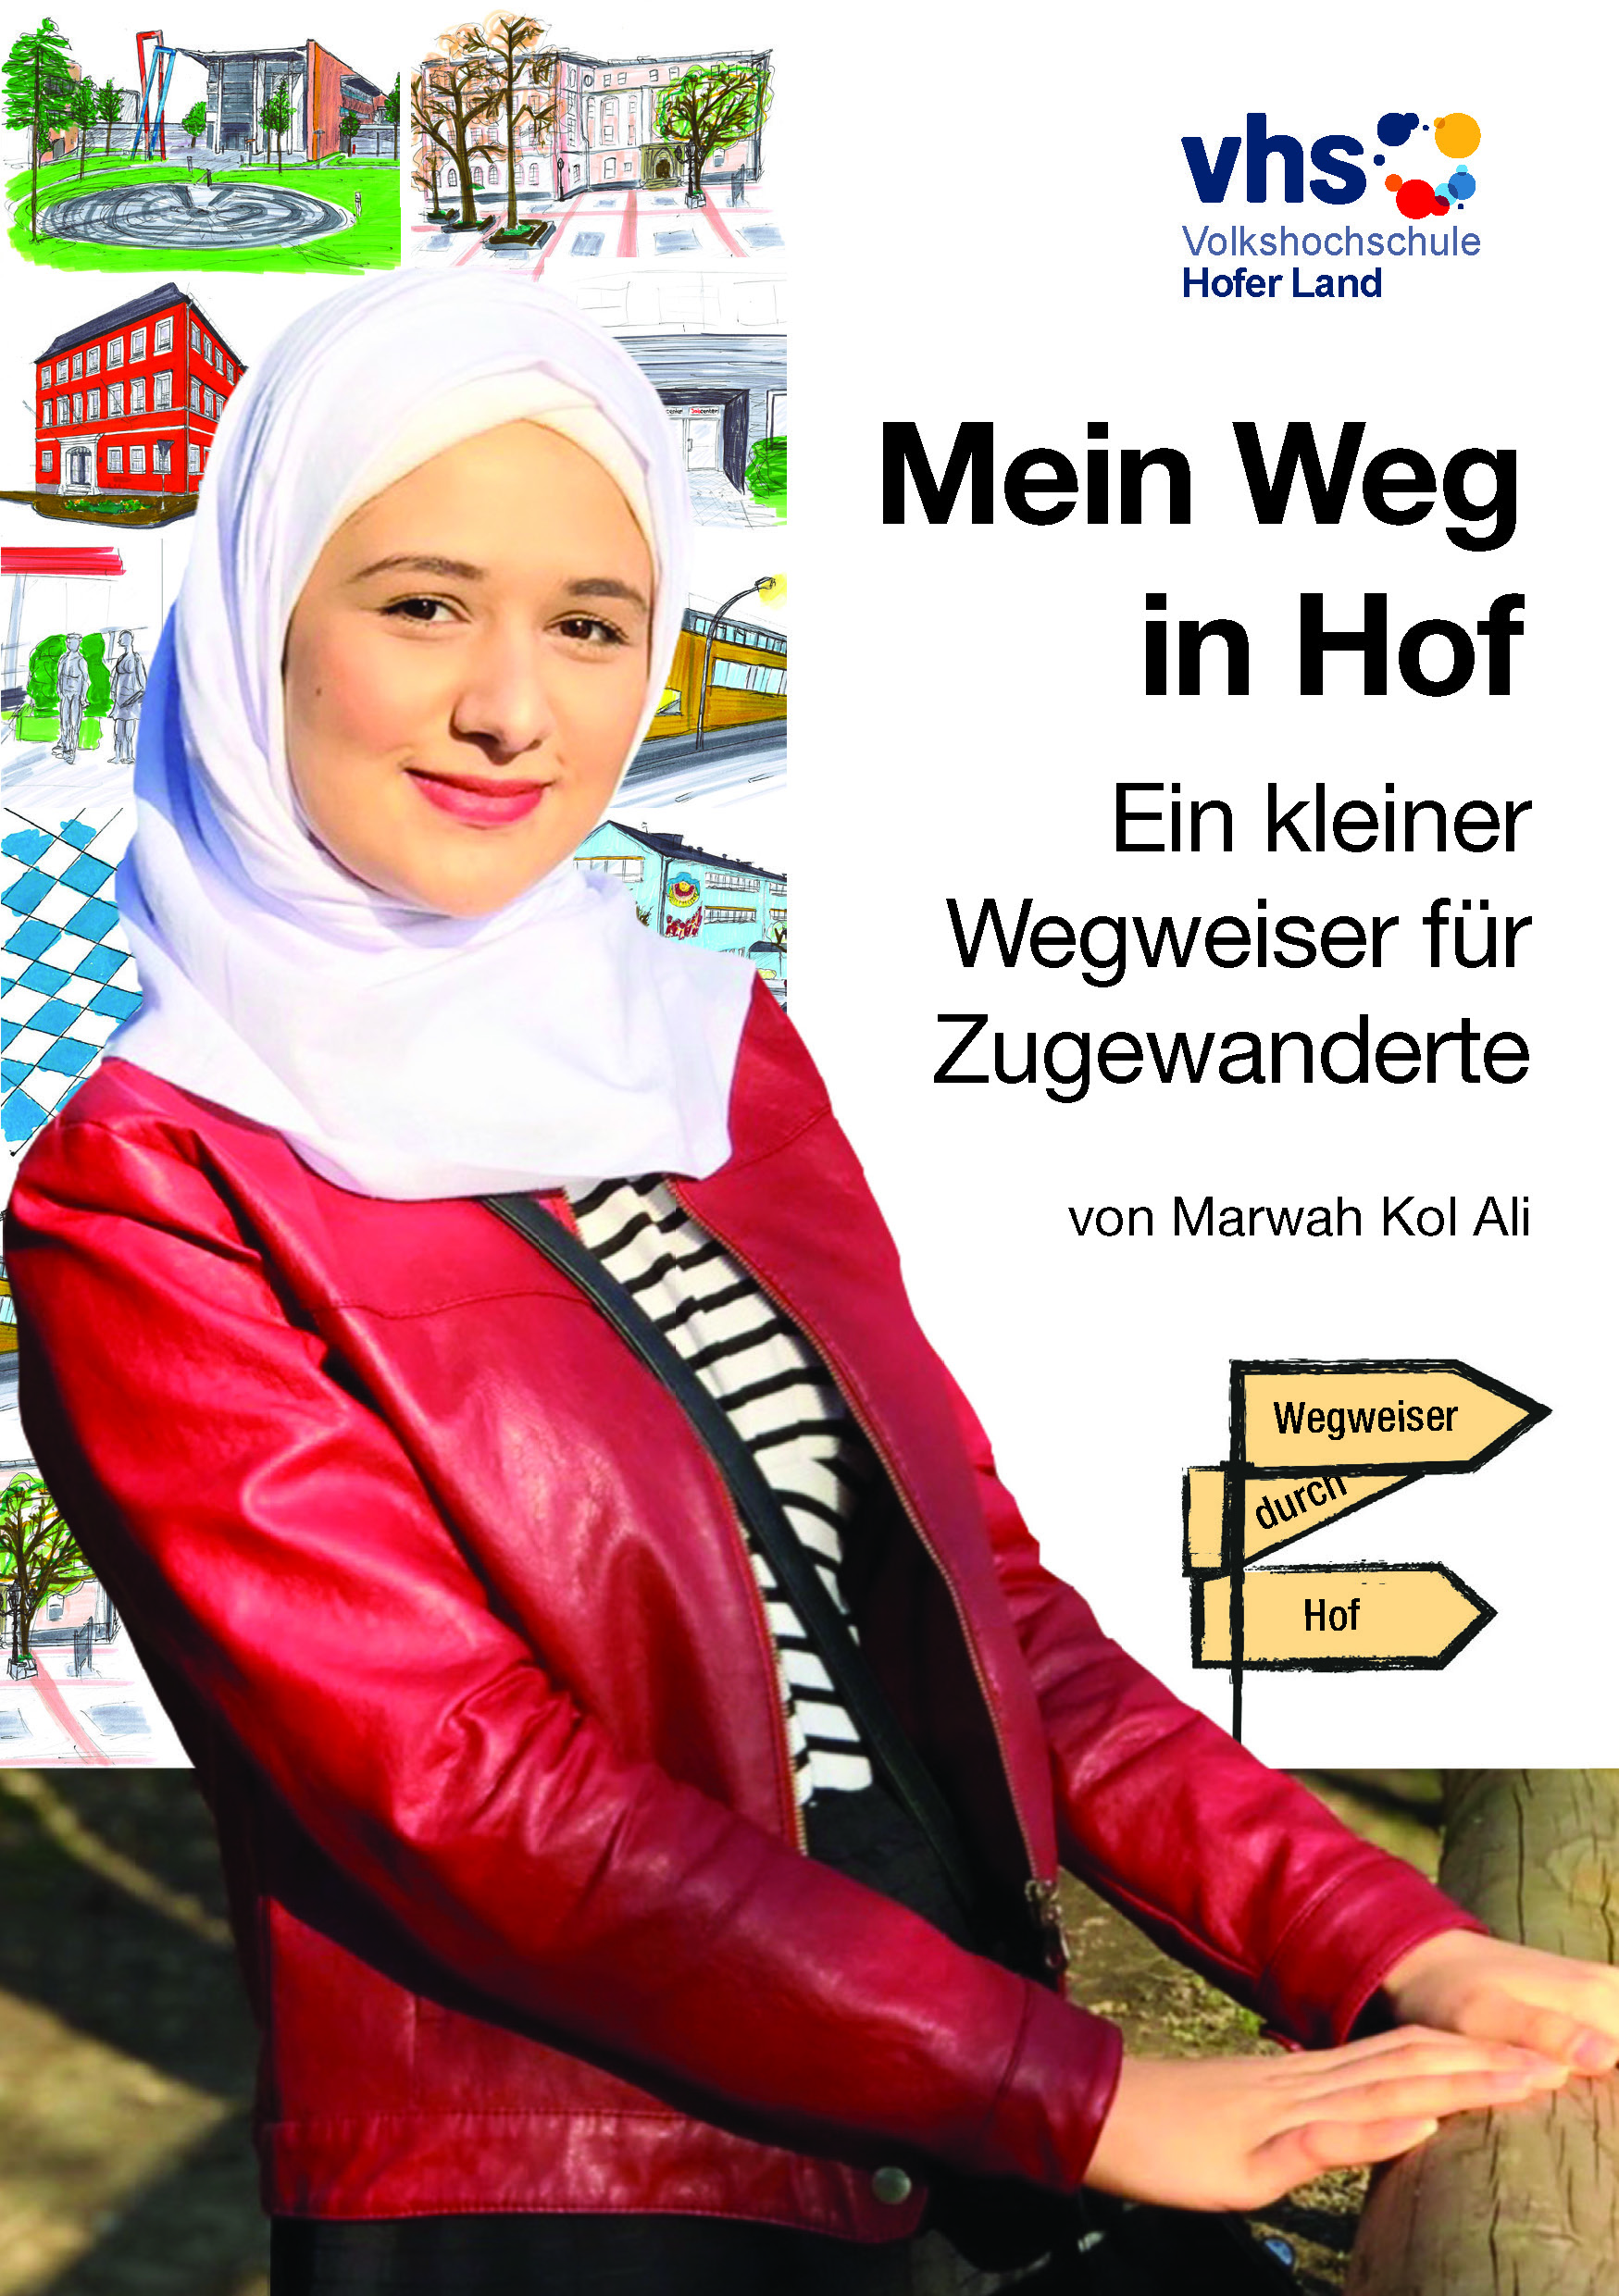 Im Vordergrund einer Broschüre sieht man eine junge moderne Frau mit Kopftuch 